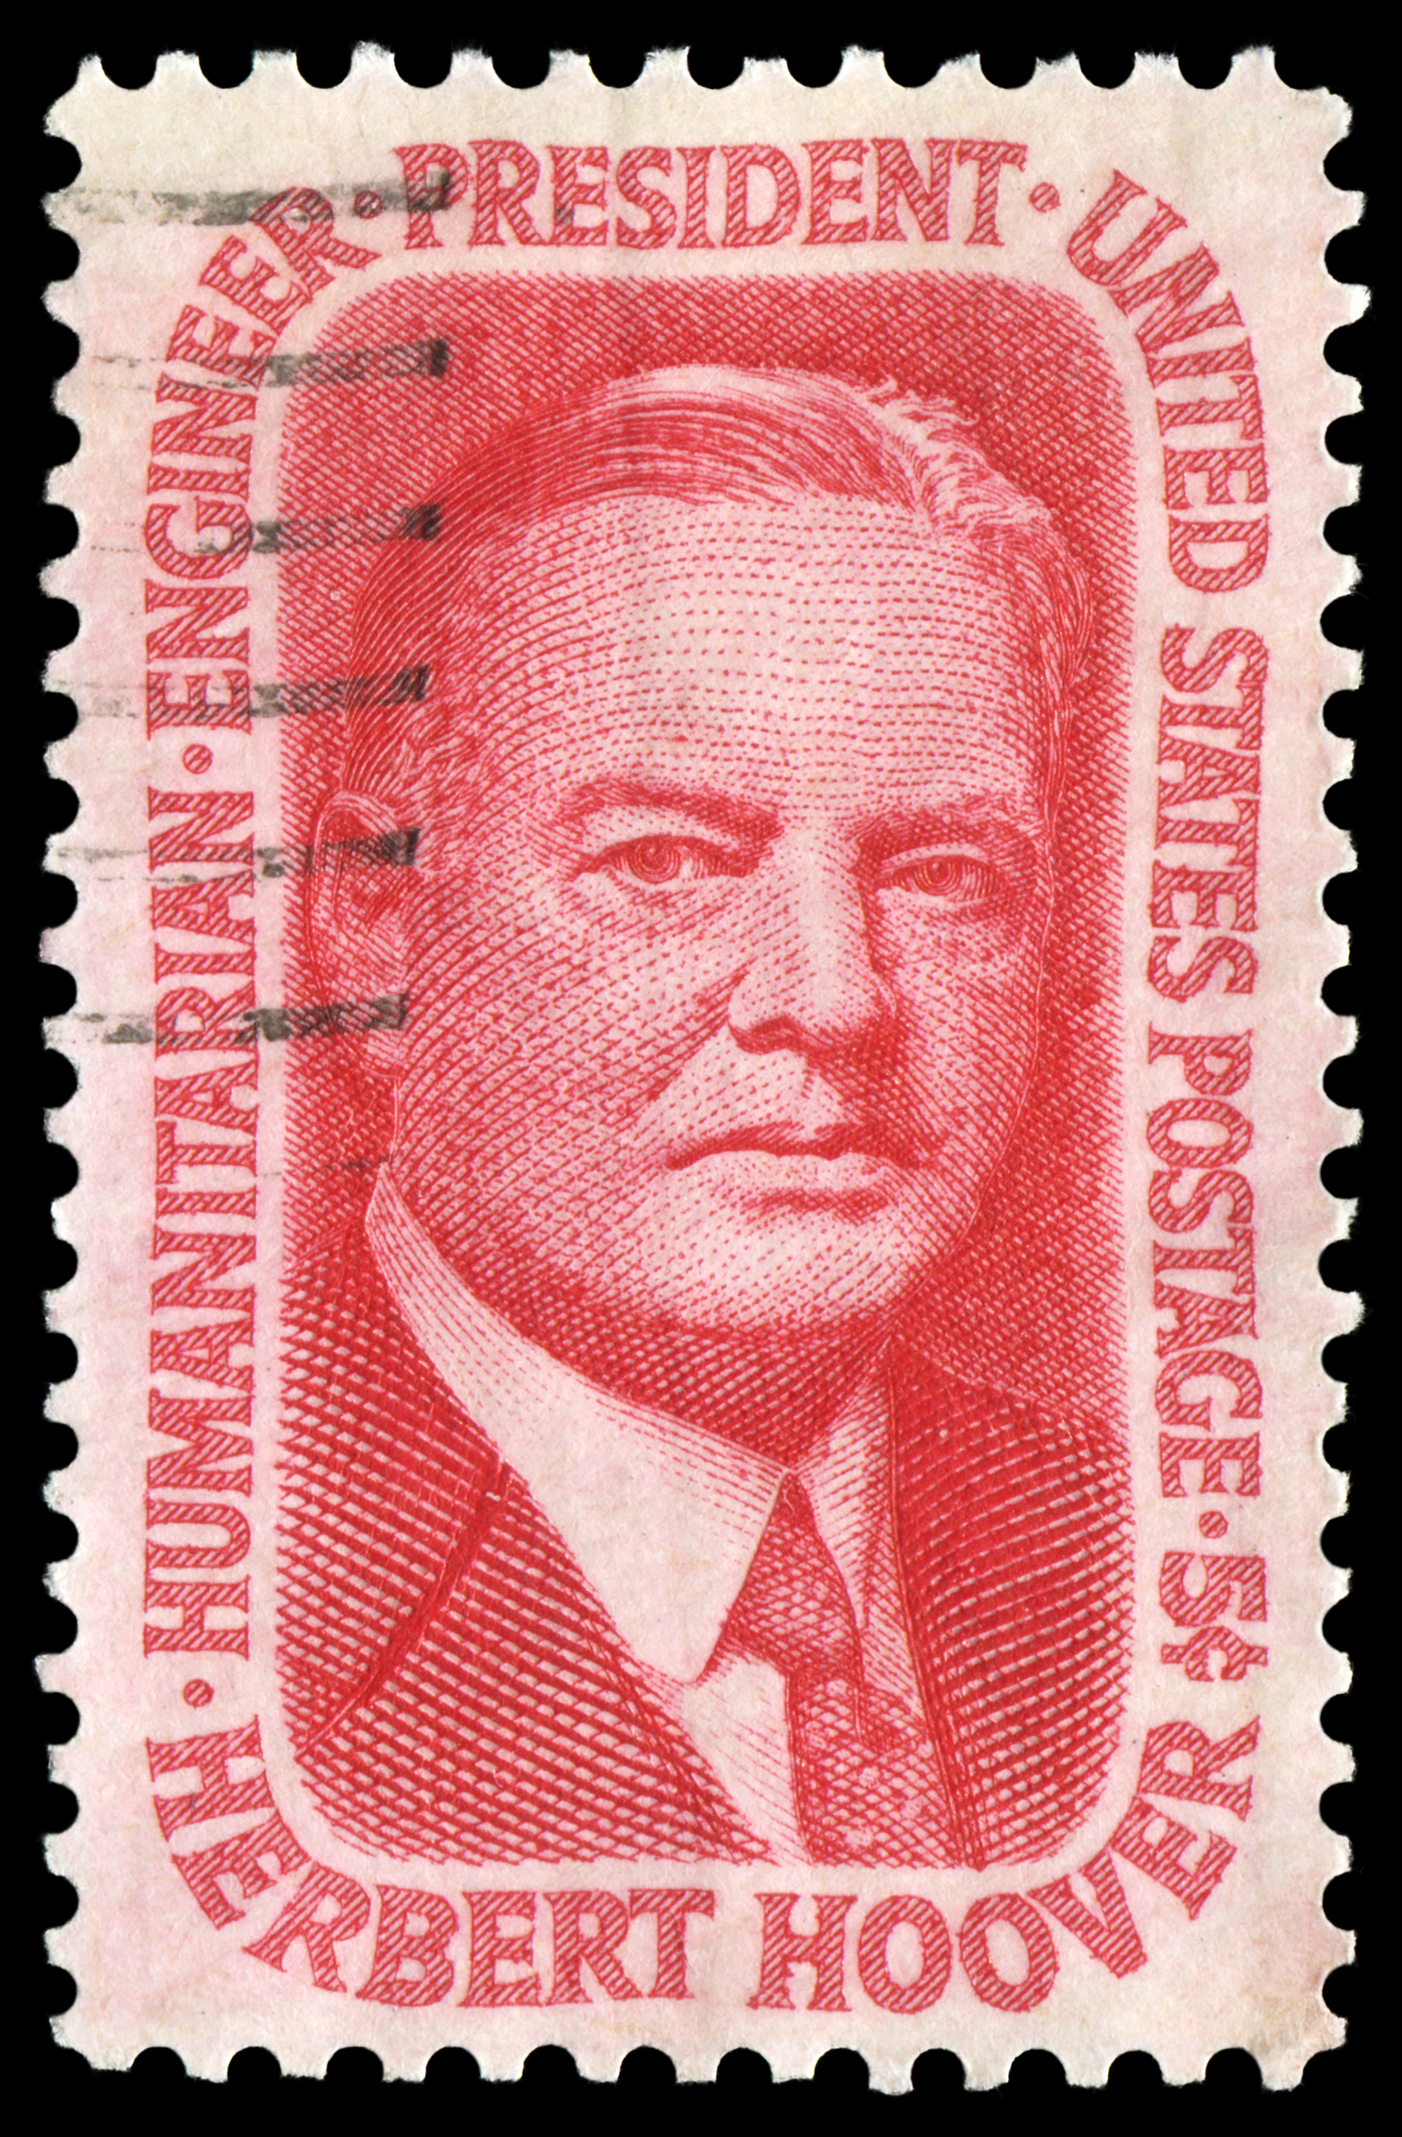 Stamp of Herbert Hoover